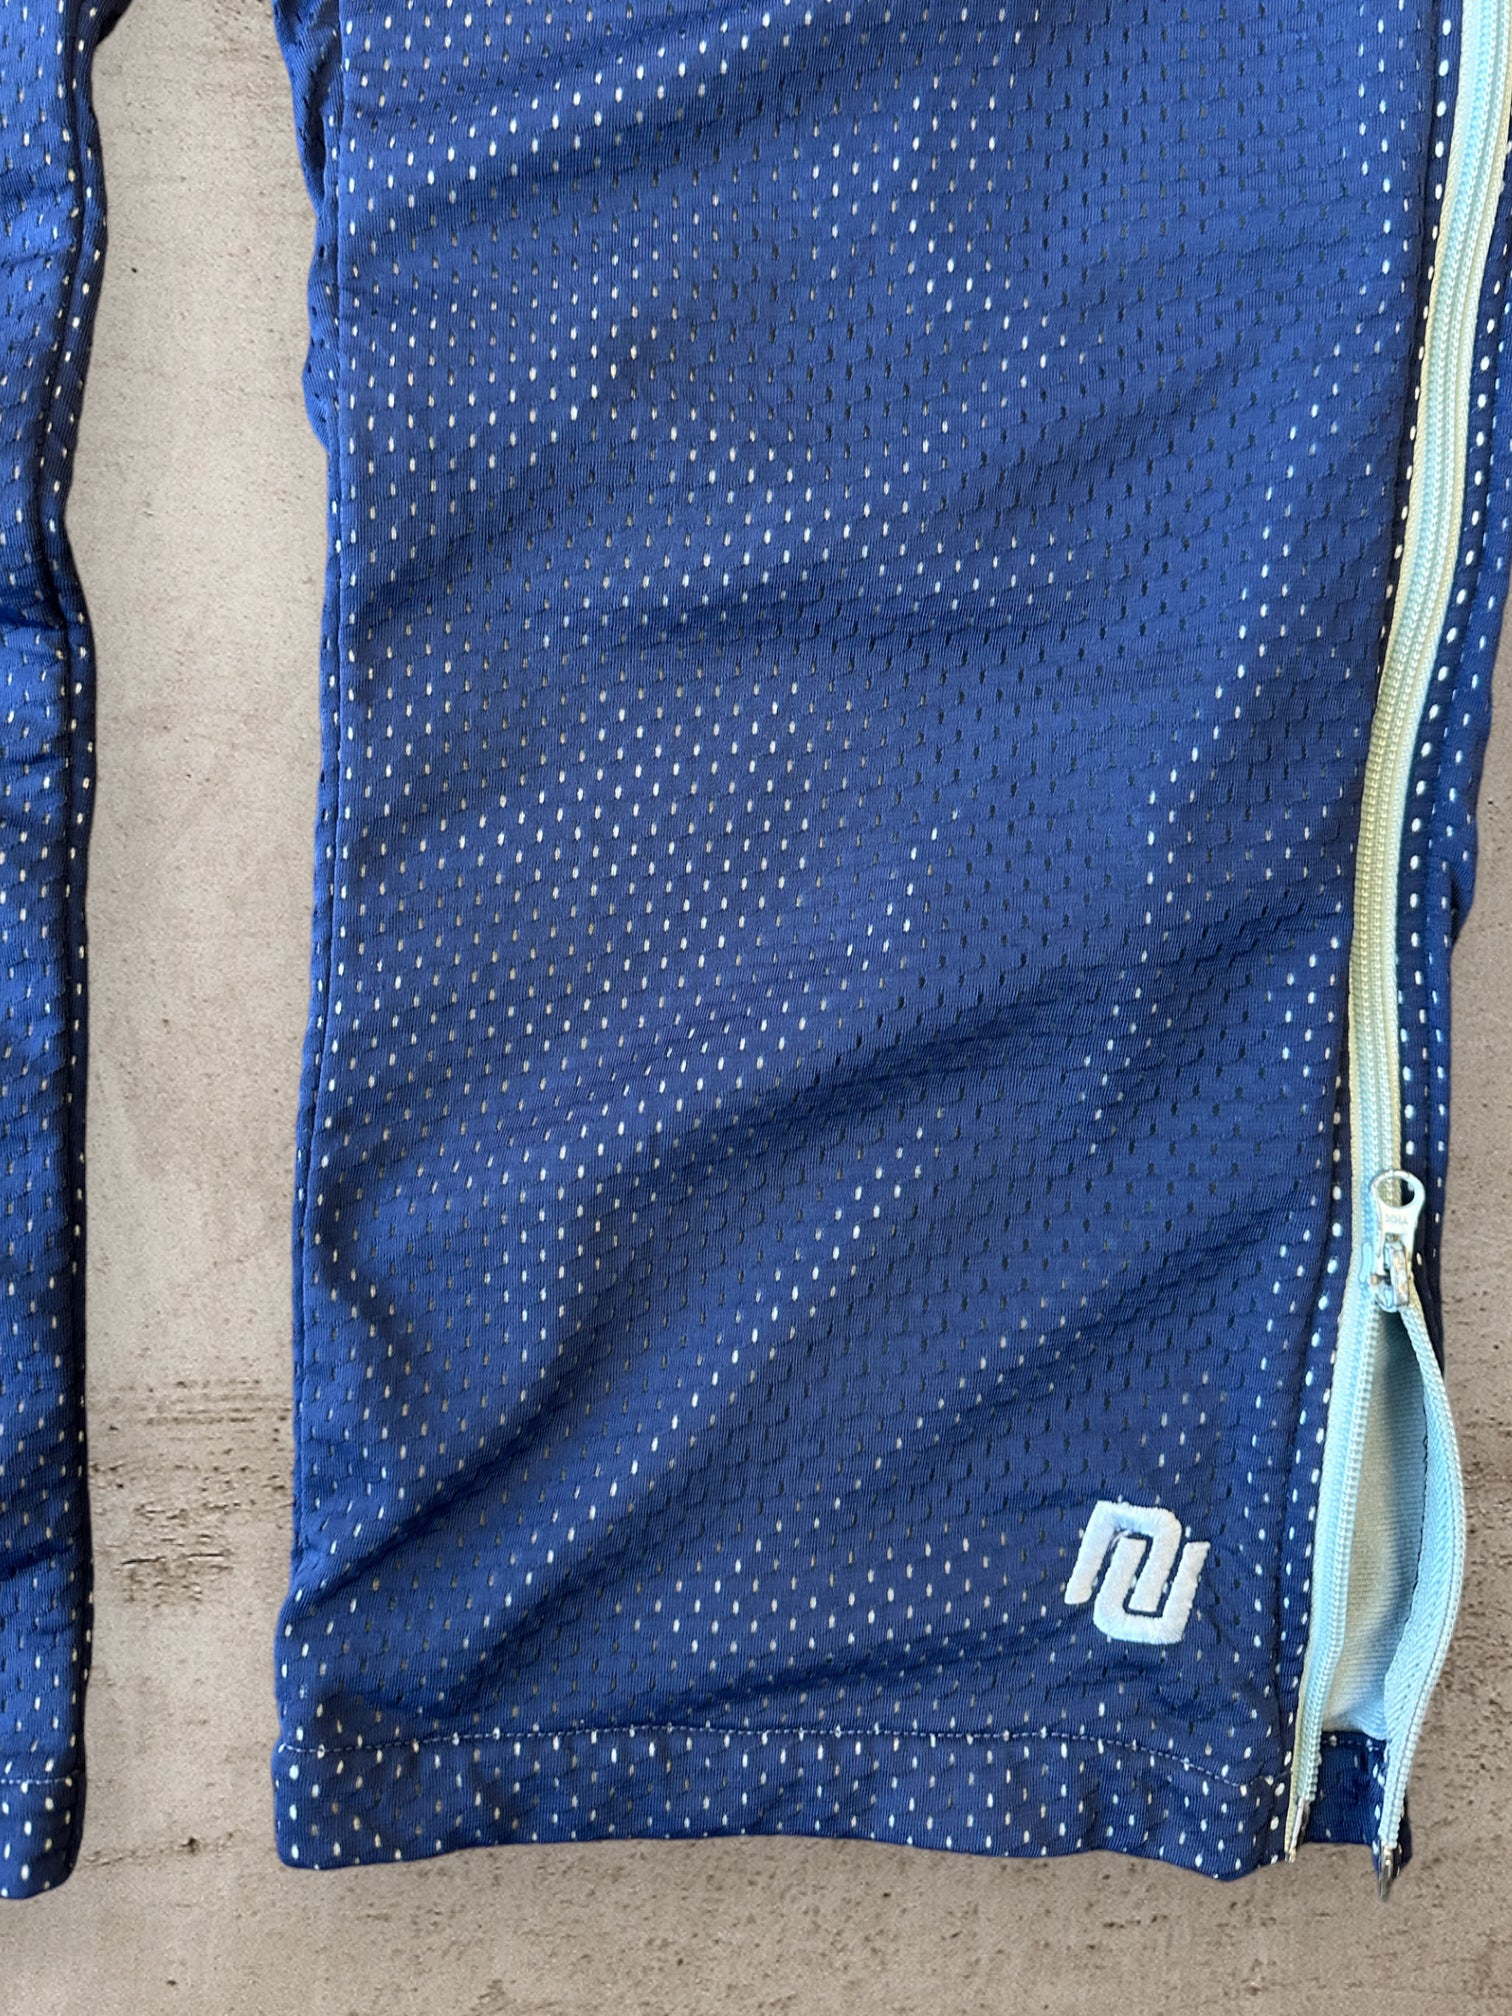 90s Nike Navy Blue & Teal Side Zip Mesh Pants - 32x31